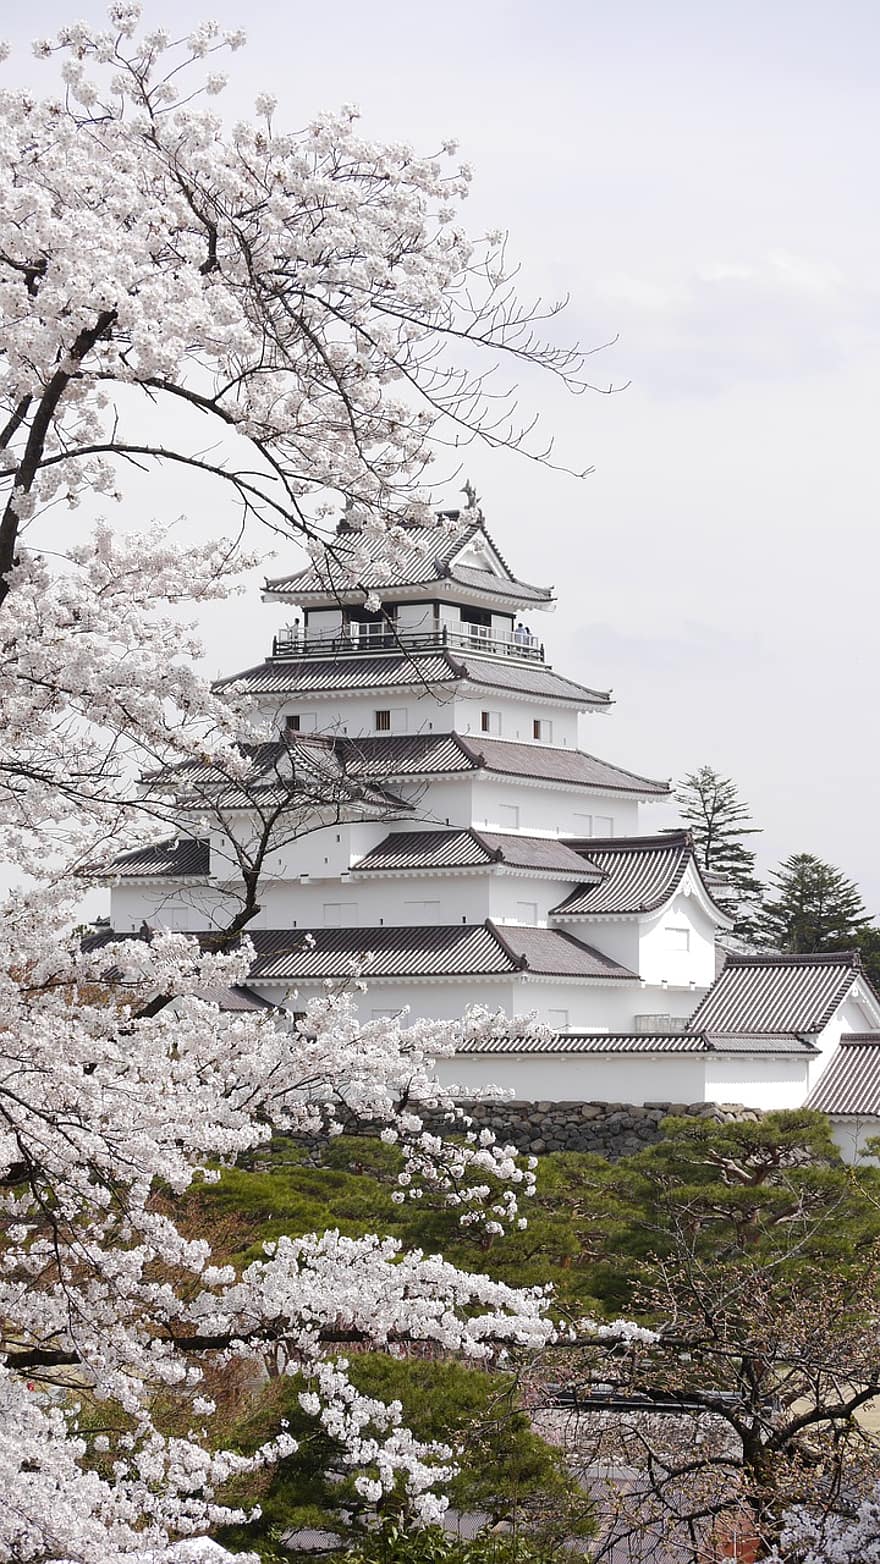 ประเทศญี่ปุ่น, ดอกซากุระ, ฤดูใบไม้ผลิ, ปราสาทซึรุกะ, ฟูกูชิม่า, Aizu, ไอสึวากามัตสึ, สถานที่ท่องเที่ยว, หลักเขต, อาคาร, อาคารประวัติศาสตร์